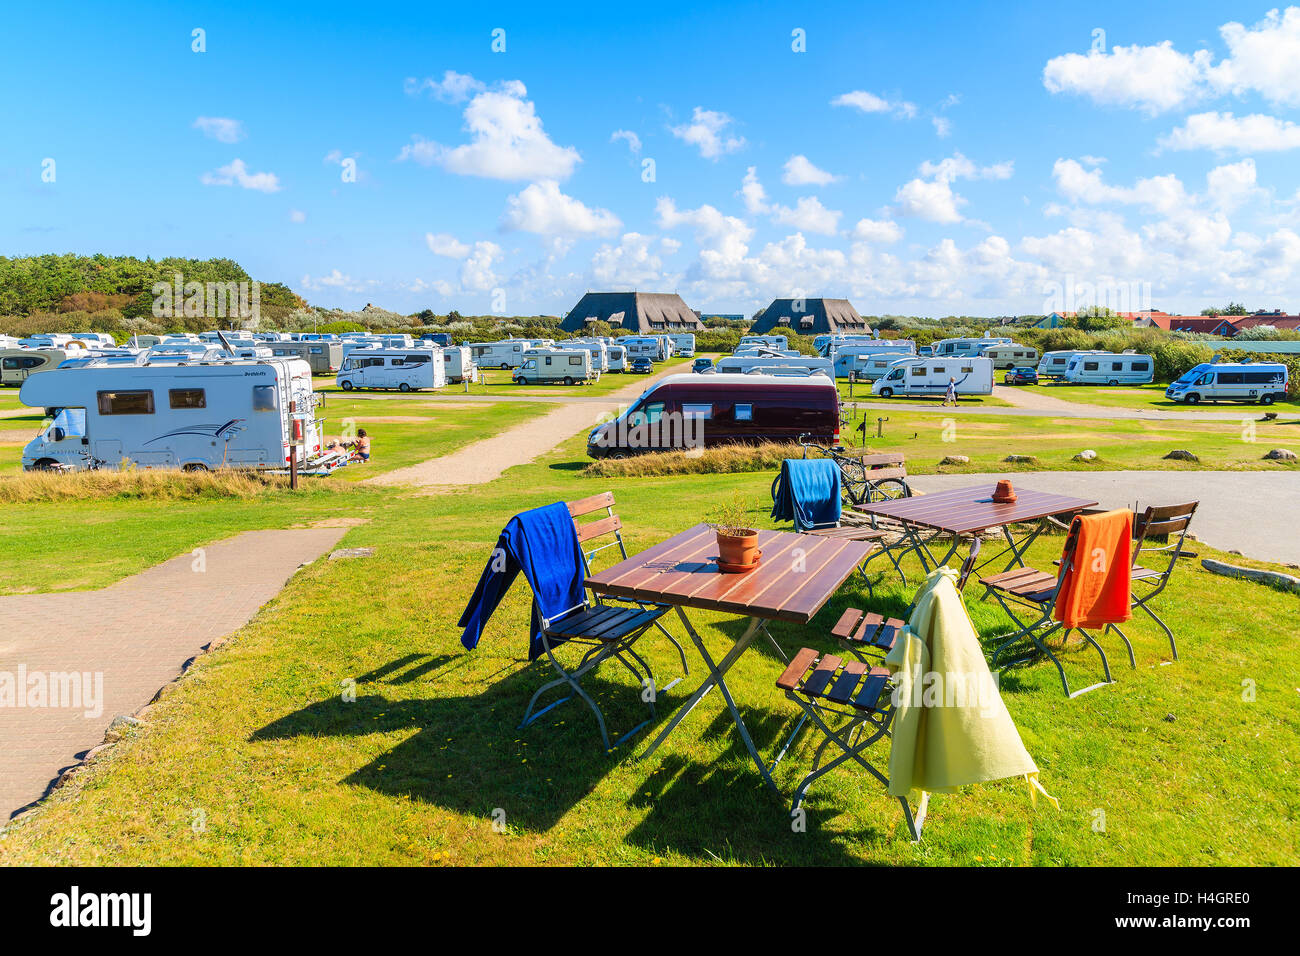 Insel SYLT, Deutschland - SEP 9, 2016: Restauranttische auf grünen Bereich des Campingplatzes auf der schönen Insel Sylt, Deutschland. Stockfoto